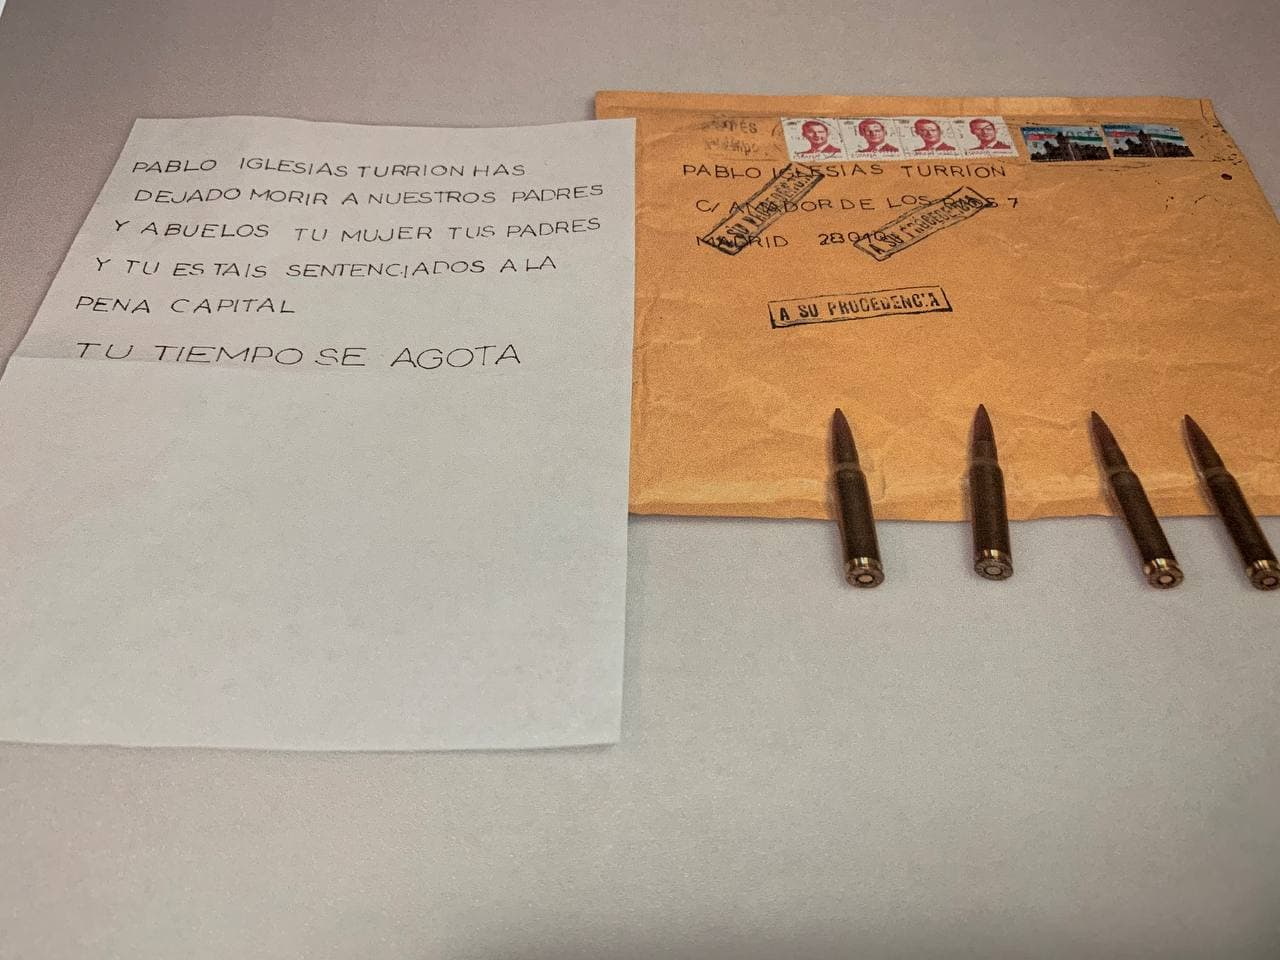 Έστειλαν σφαίρες στον Πάμπλο Ιγκλέσιας και τον Ισπανό υπουργό Εσωτερικών